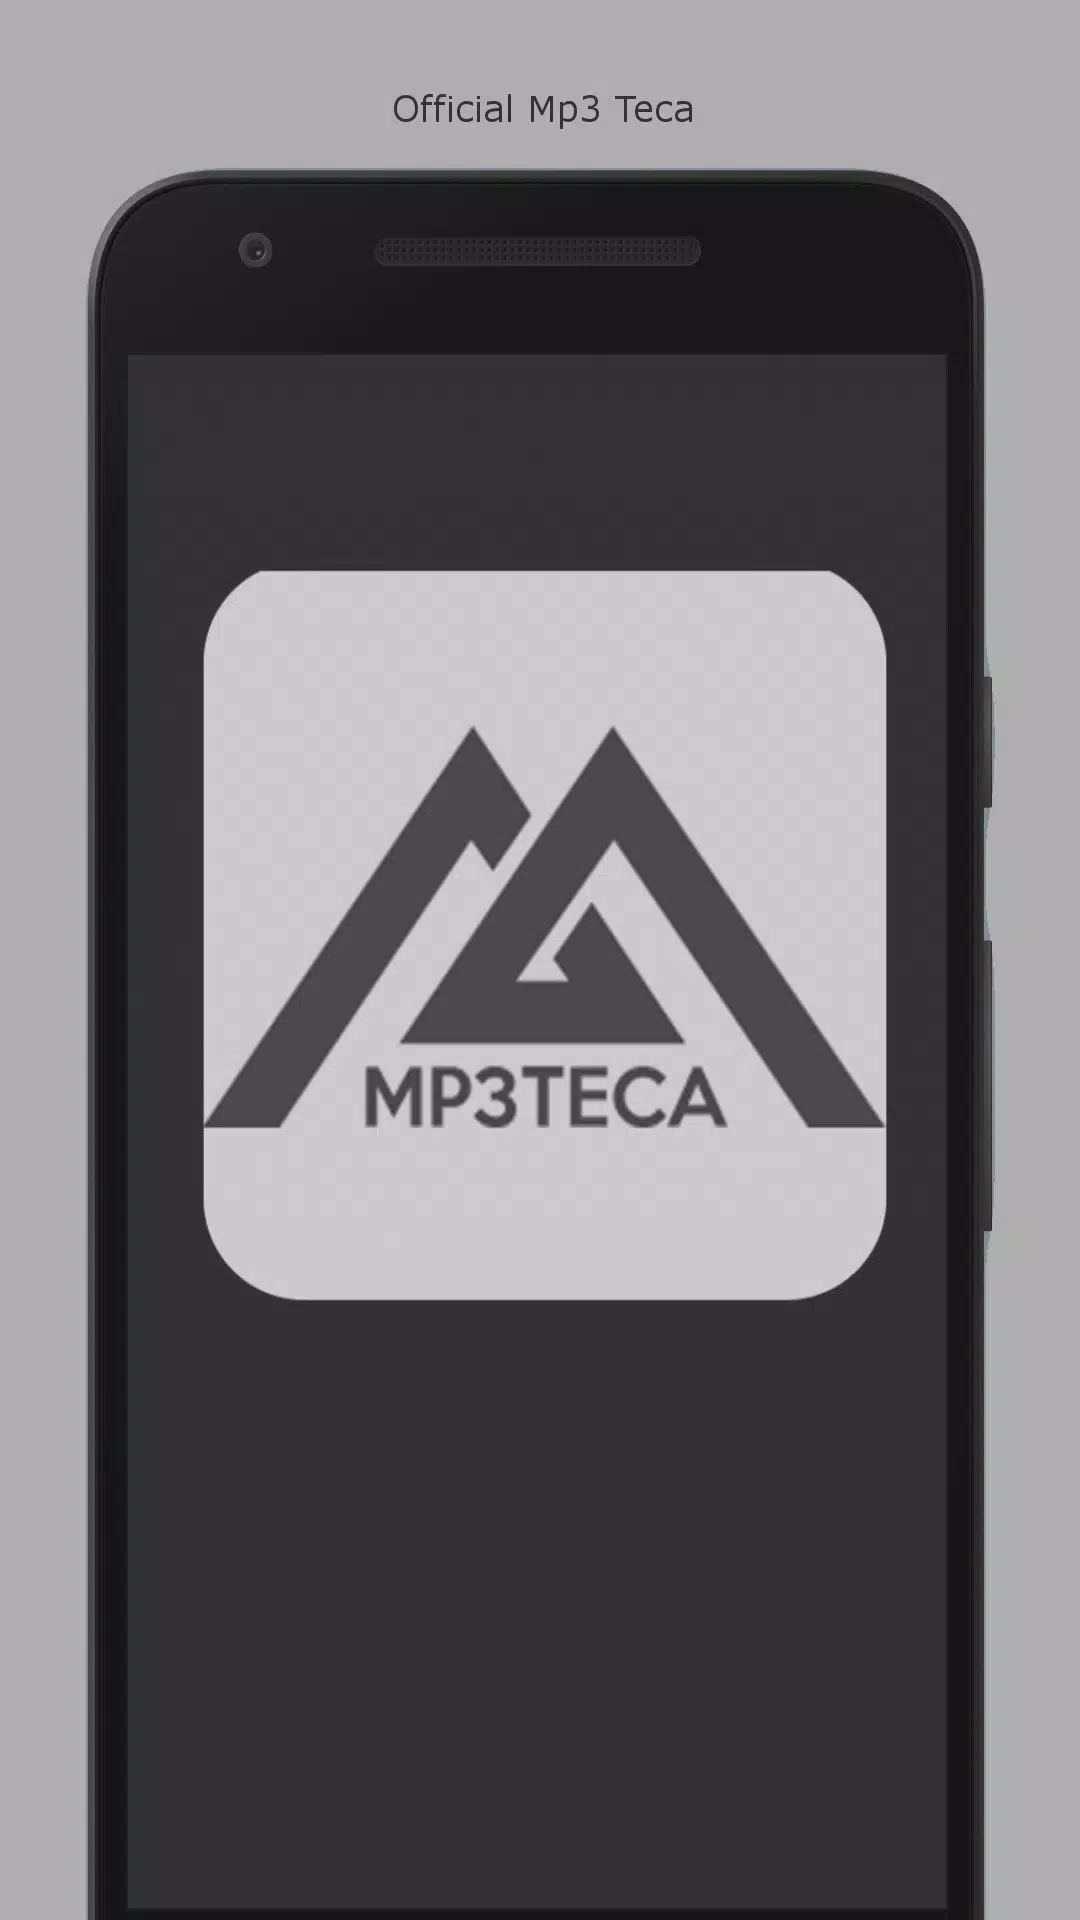 Descarga de APK de Official Mp3 Teca para Android